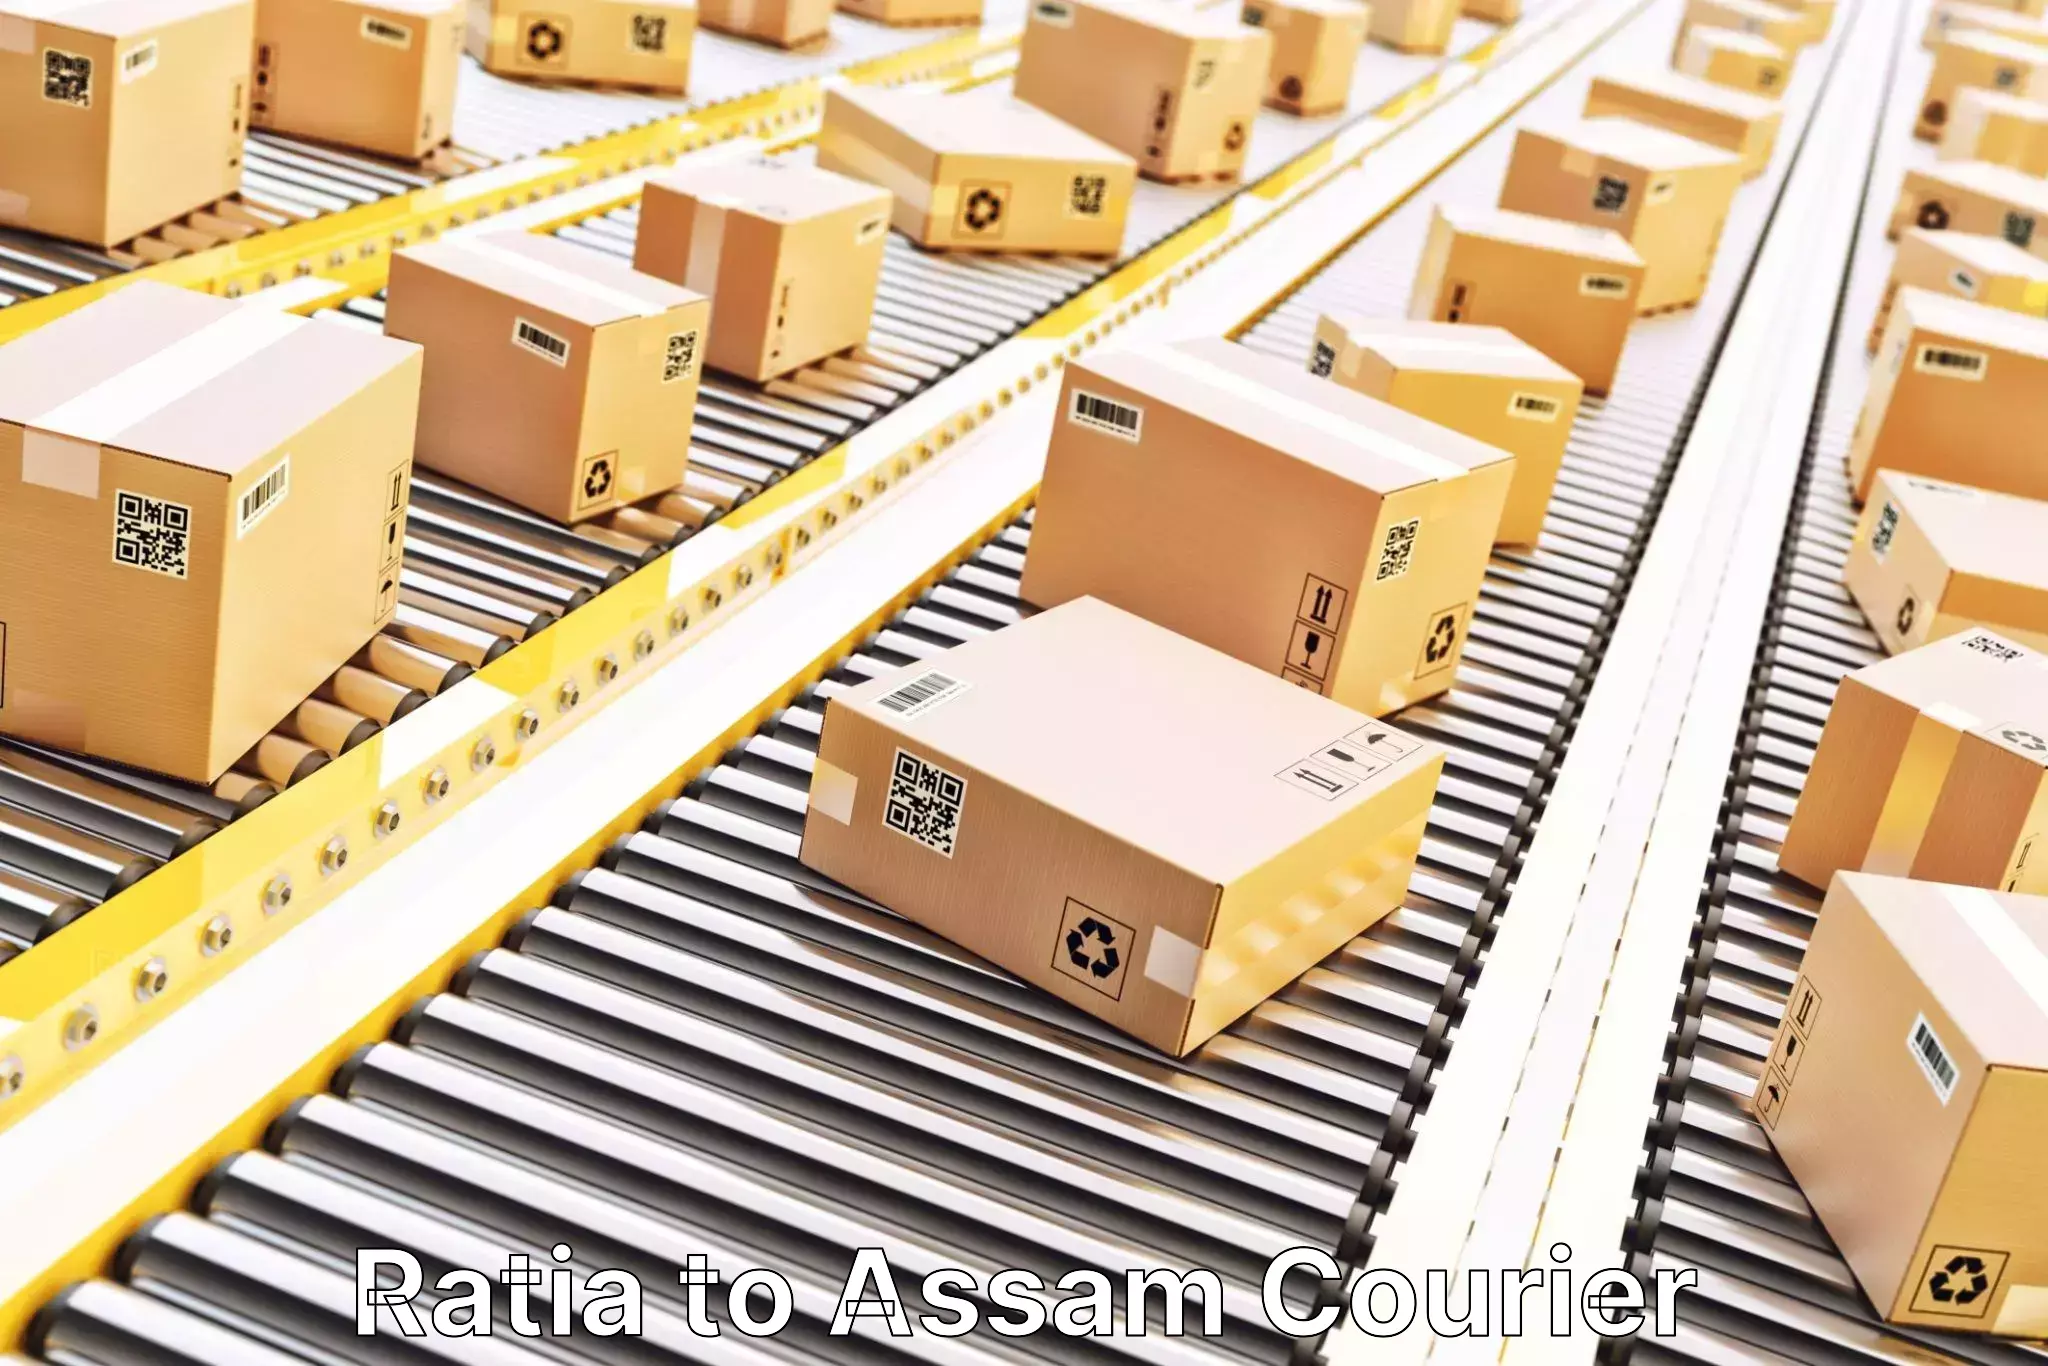 Integrated logistics solutions in Ratia to Assam